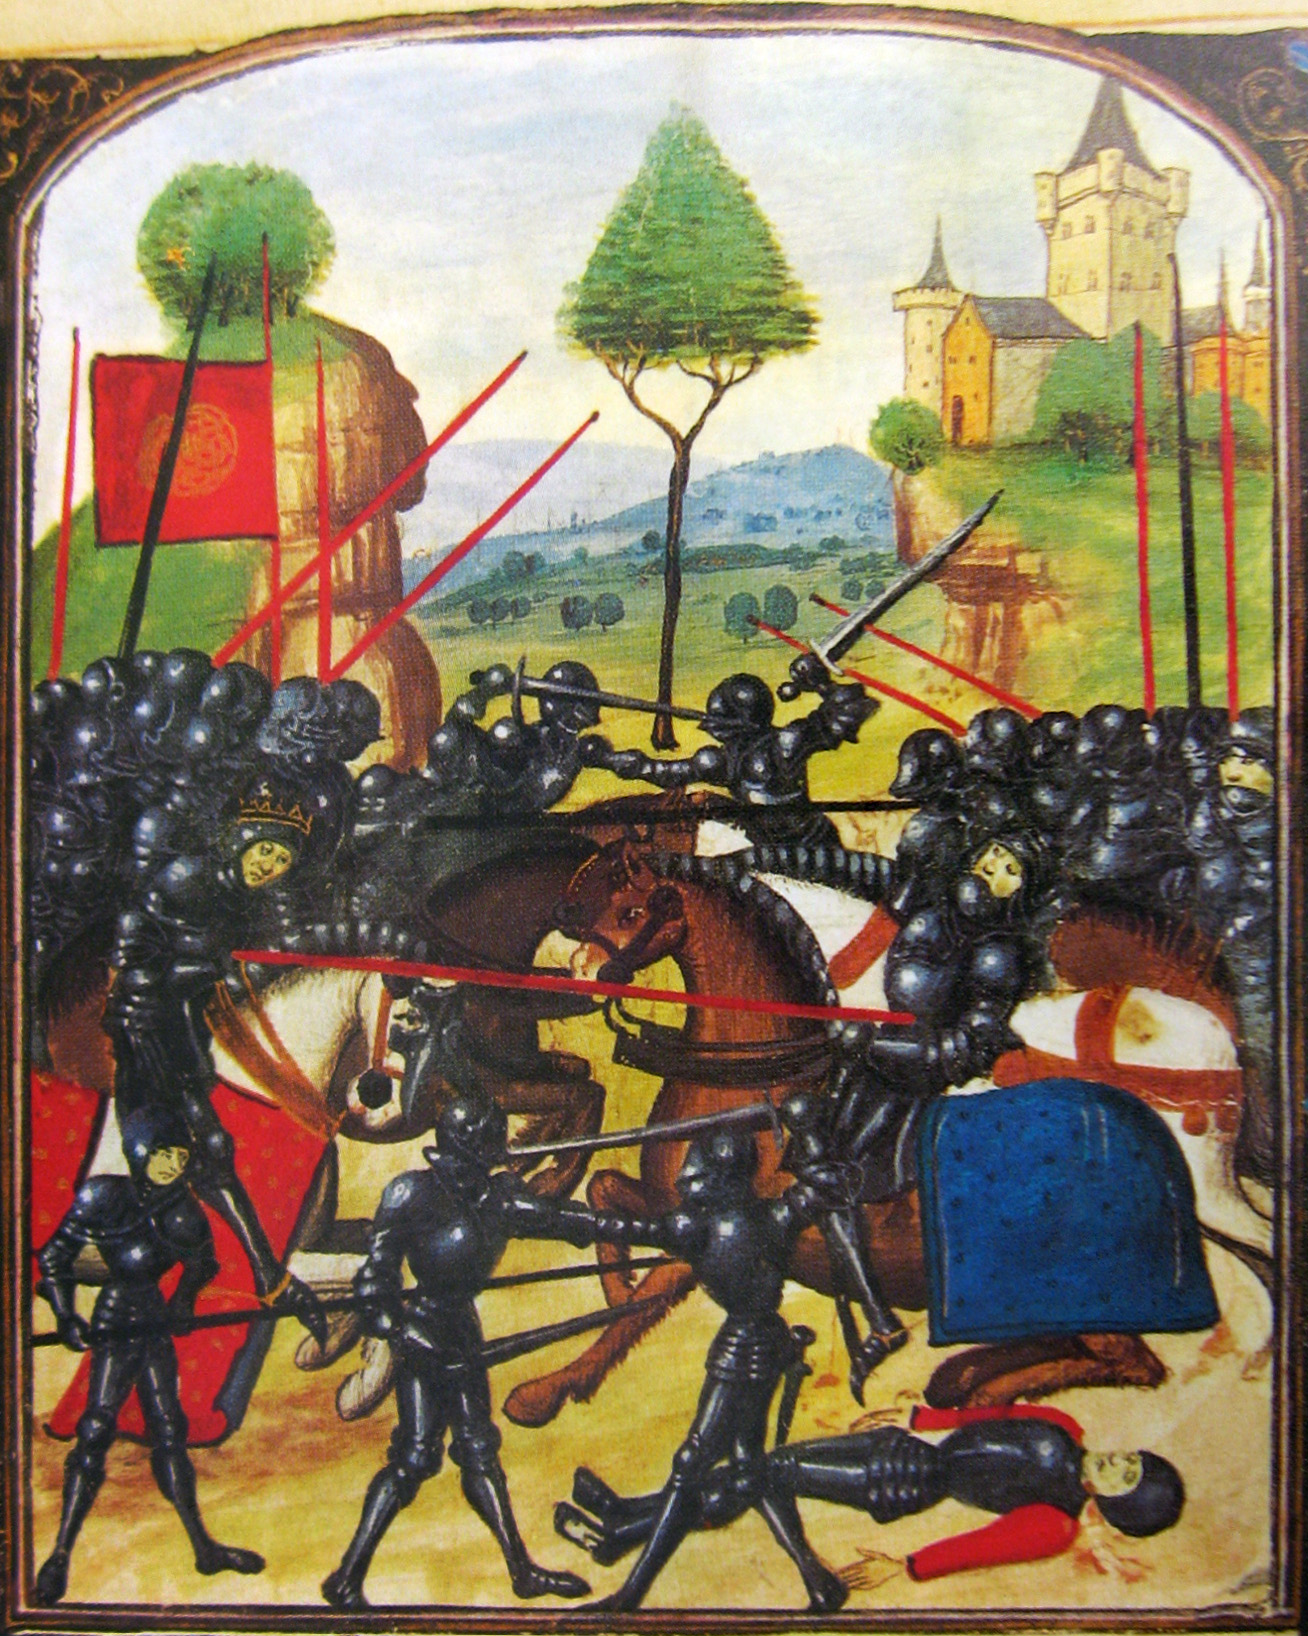 A Guerra das Rosas, o conflito que inspirou Shakespeare e deu início à dinastia de Tudor